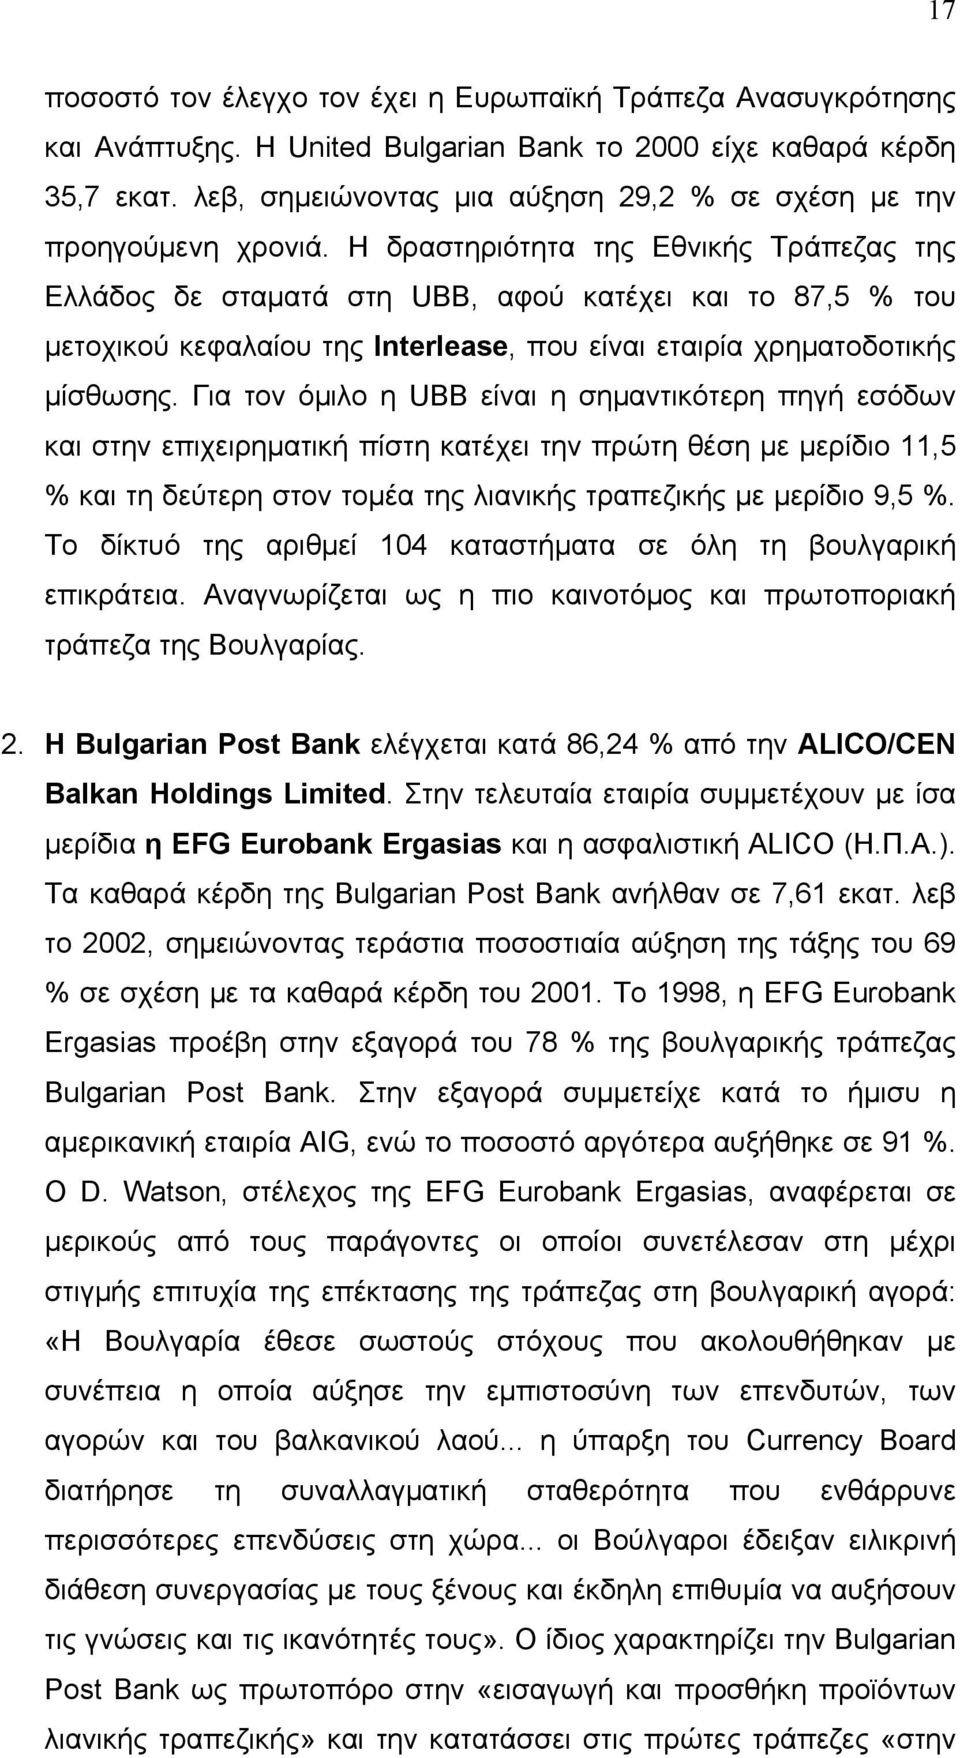 Η δραστηριότητα της Εθνικής Τράπεζας της Ελλάδος δε σταματά στη UBB, αφού κατέχει και το 87,5 % του μετοχικού κεφαλαίου της Interlease, που είναι εταιρία χρηματοδοτικής μίσθωσης.